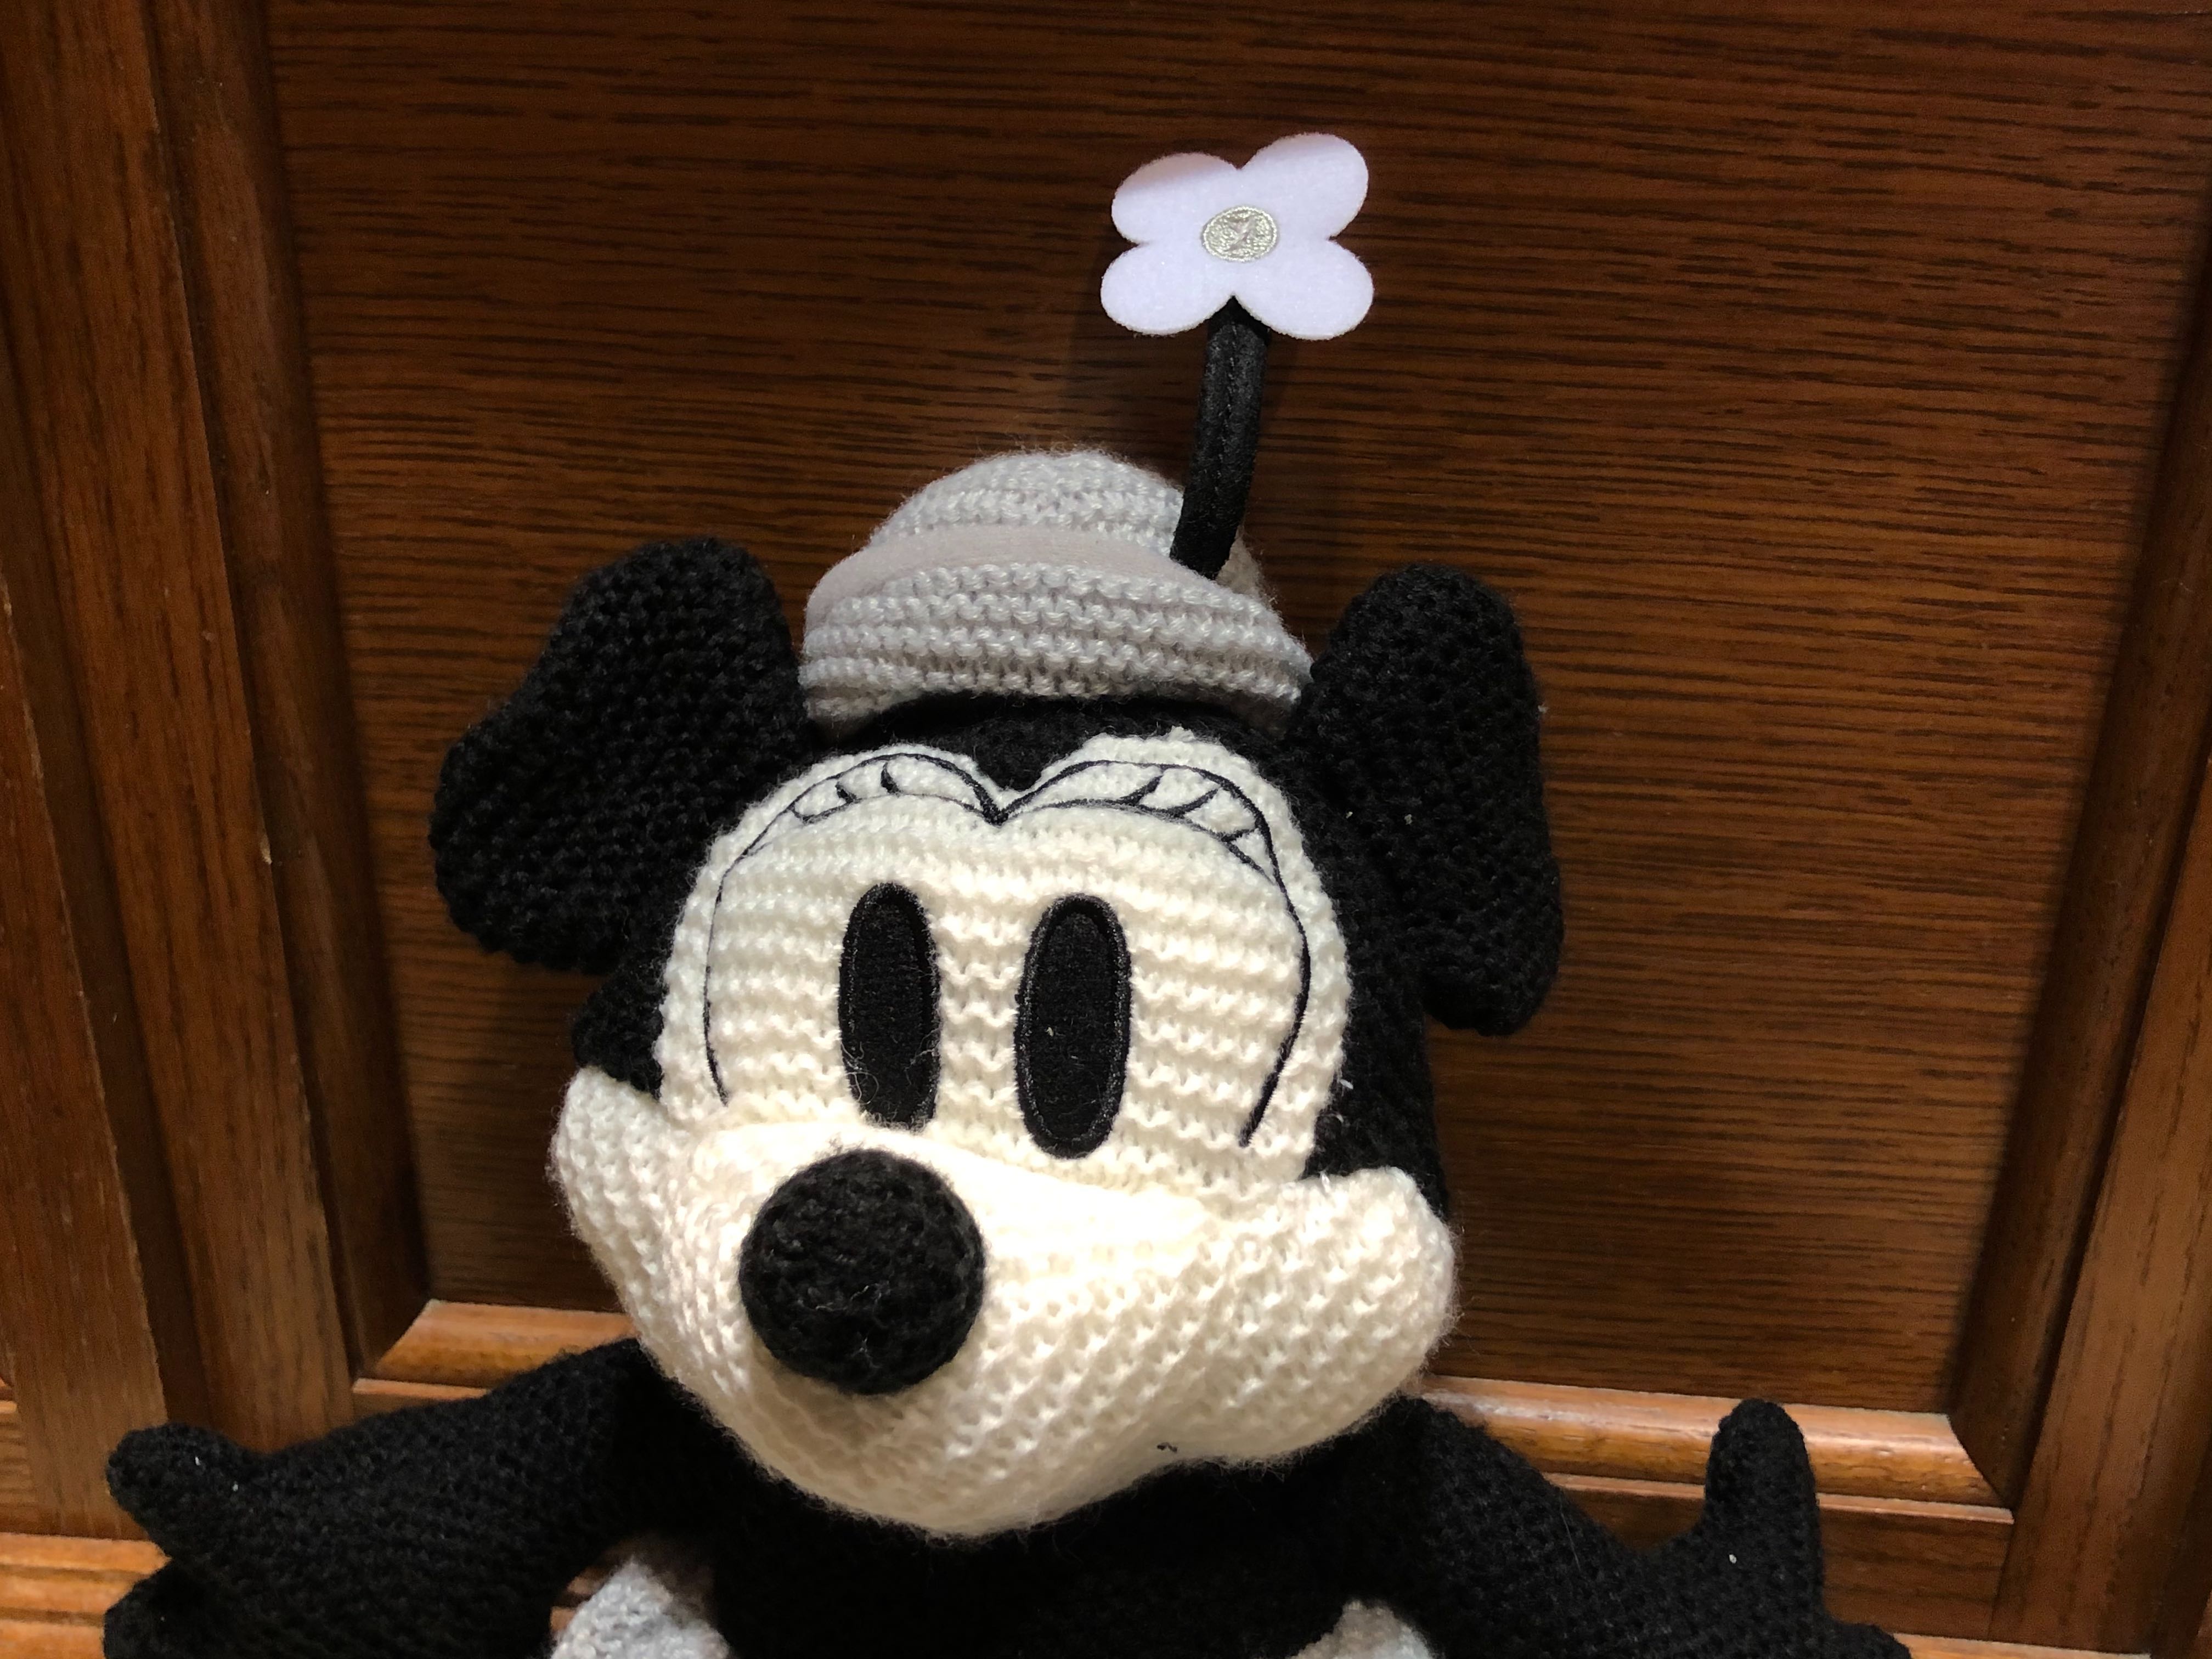 Minnie knit plush